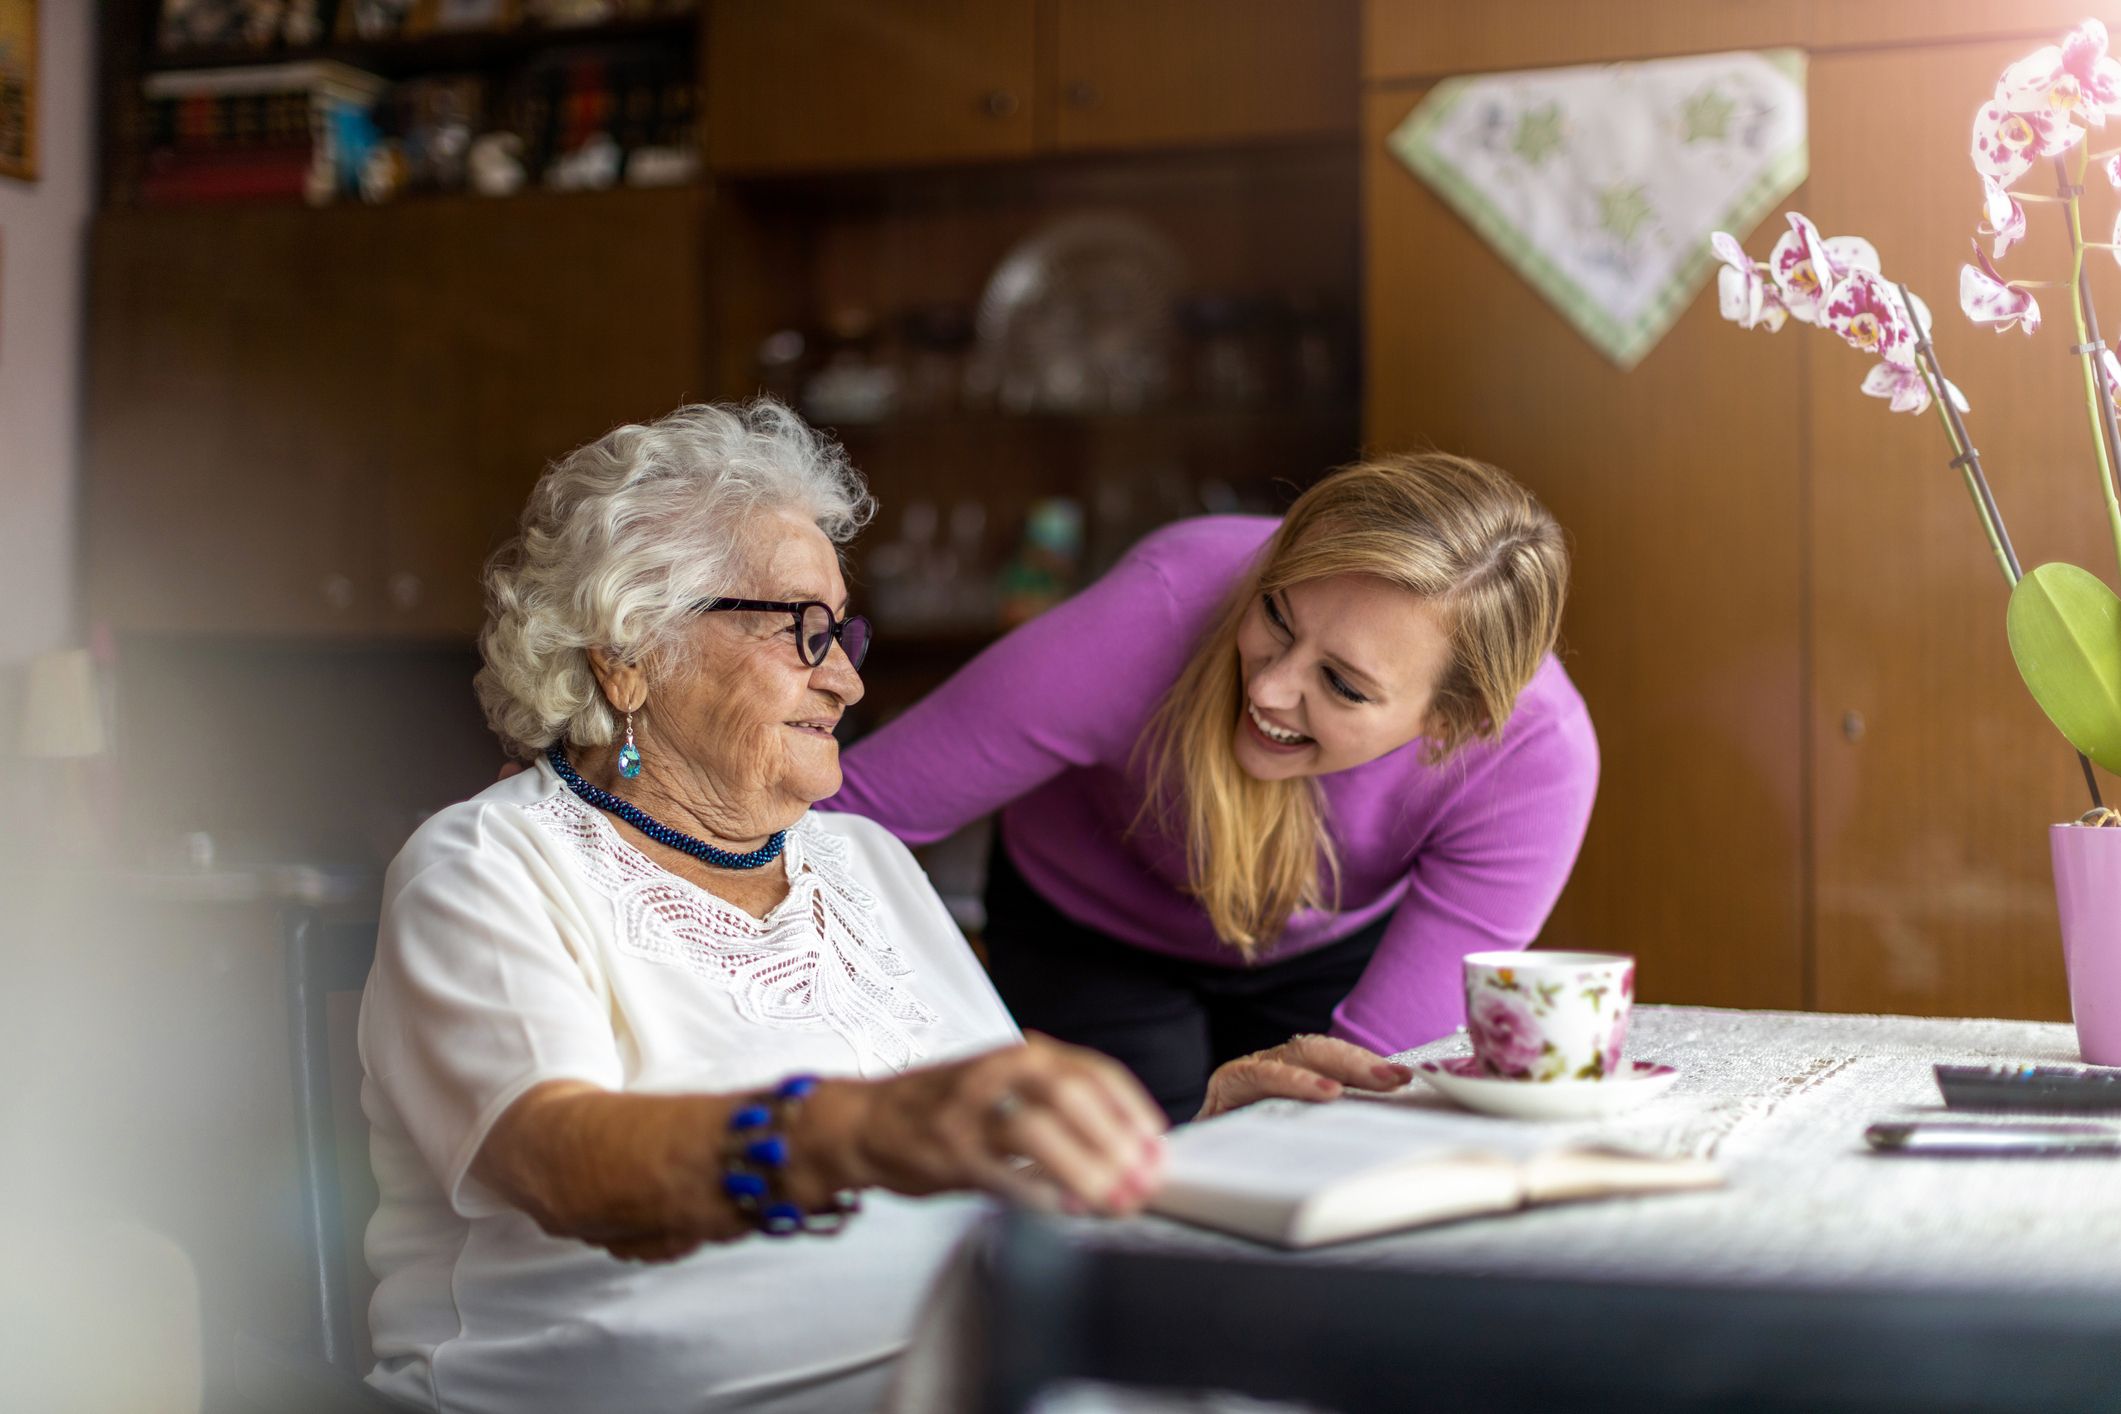 Qué puedo estudiar para trabajar con personas mayores? - Blog Emagister